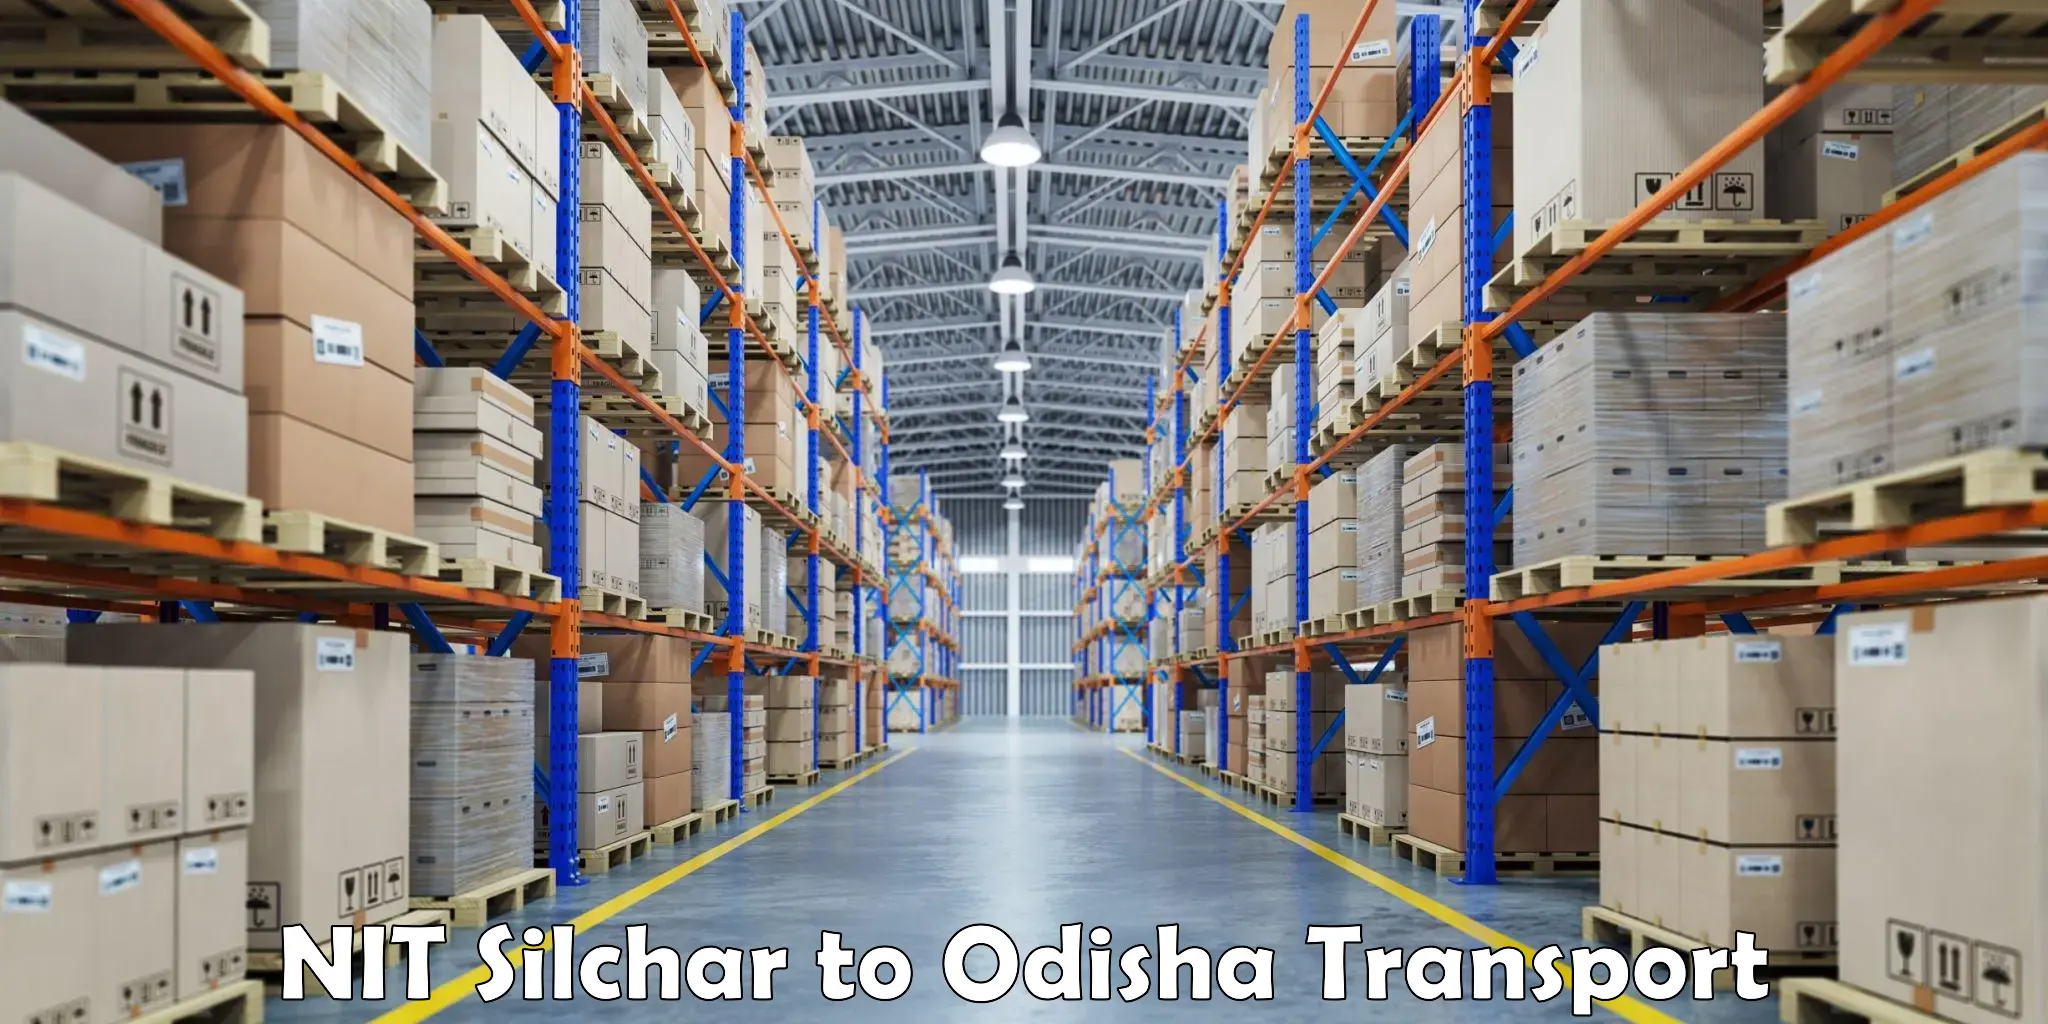 Online transport service NIT Silchar to Melchhamunda